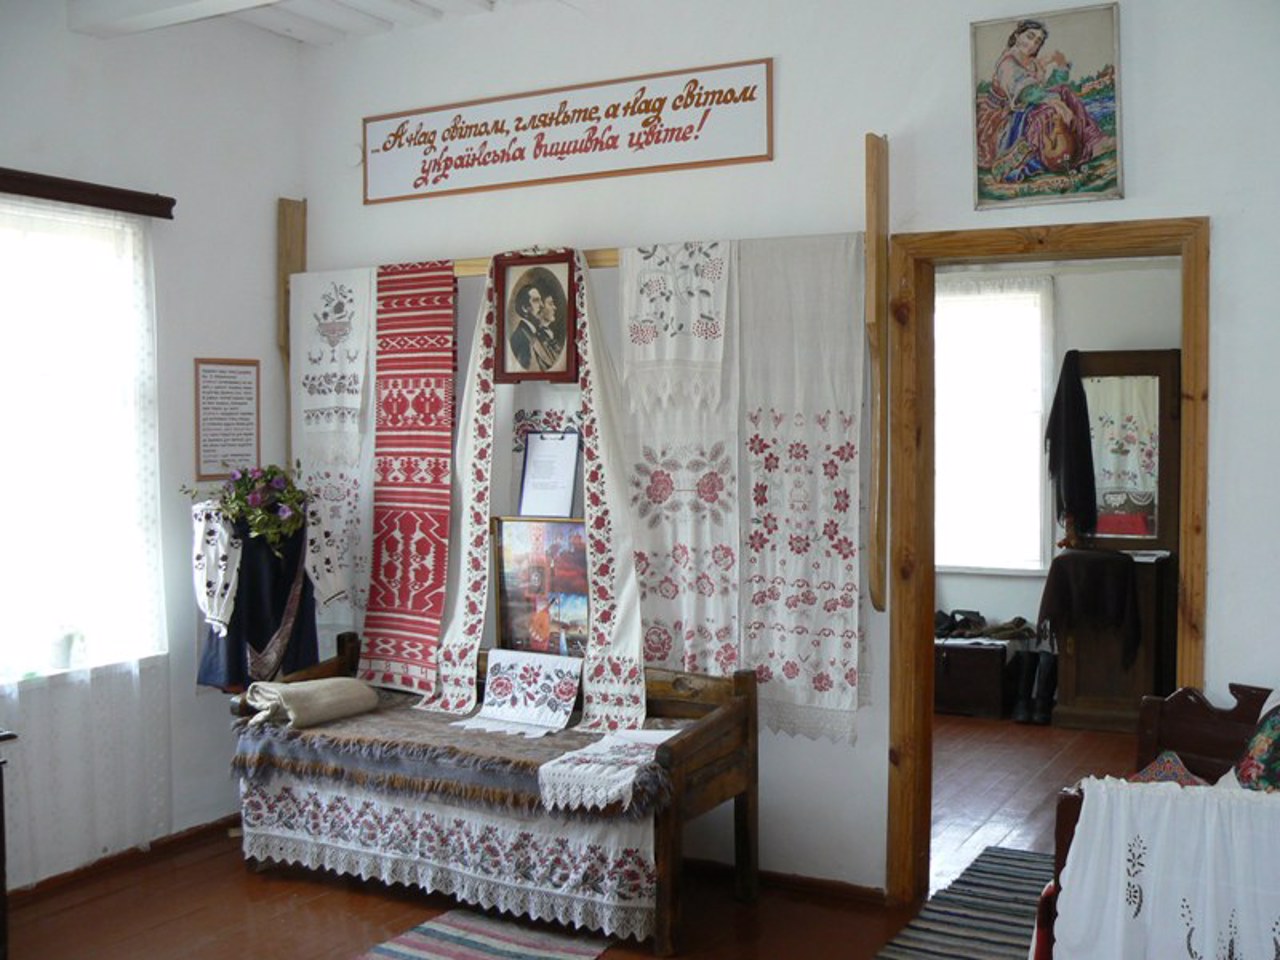 P. Kulish Museum "Hannyna Pustyn", Olenivka